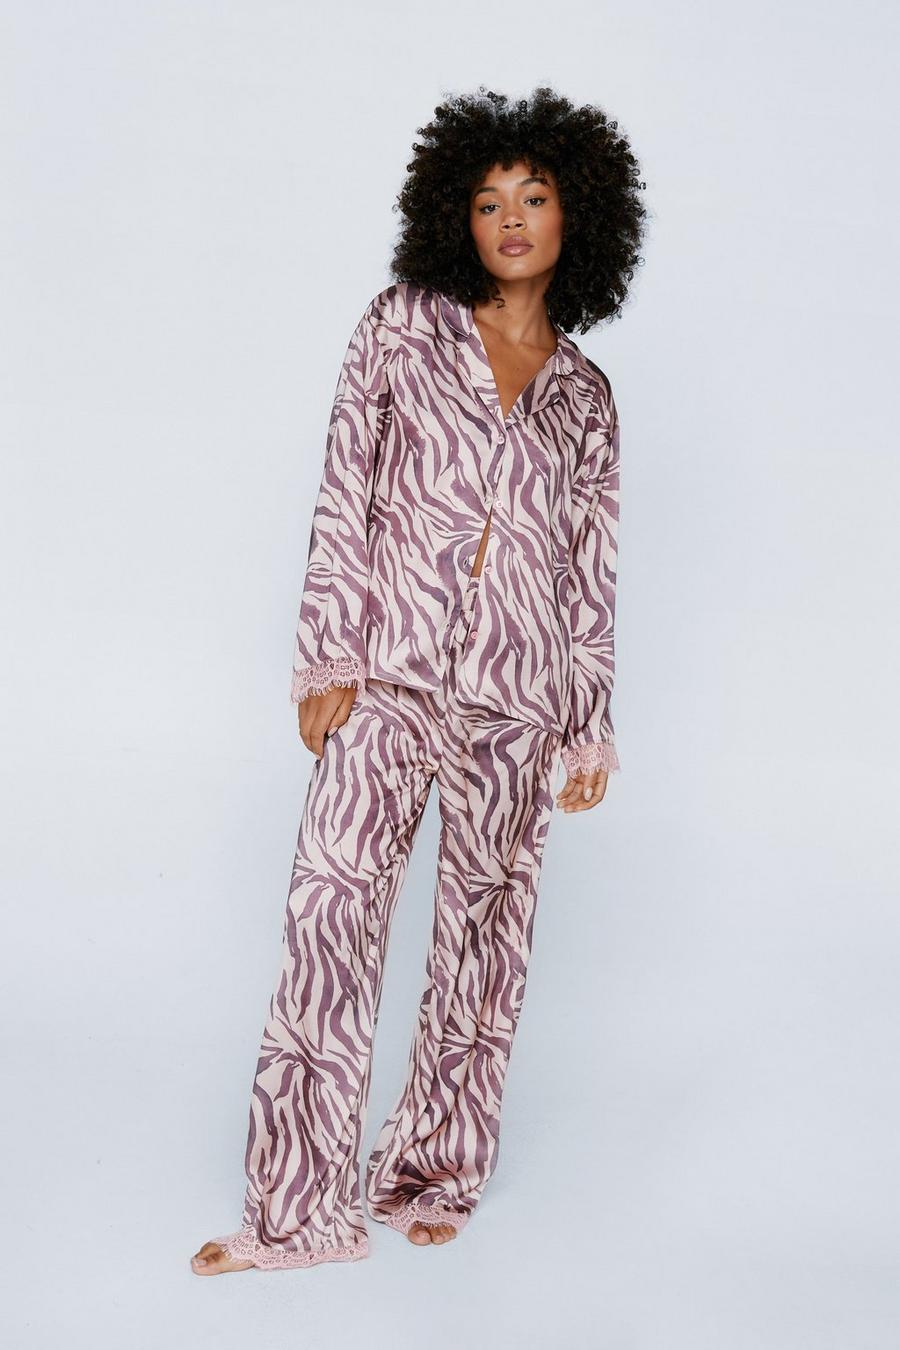 Satin Zebra Contrast Lace Pajama Shirt And Pants Set